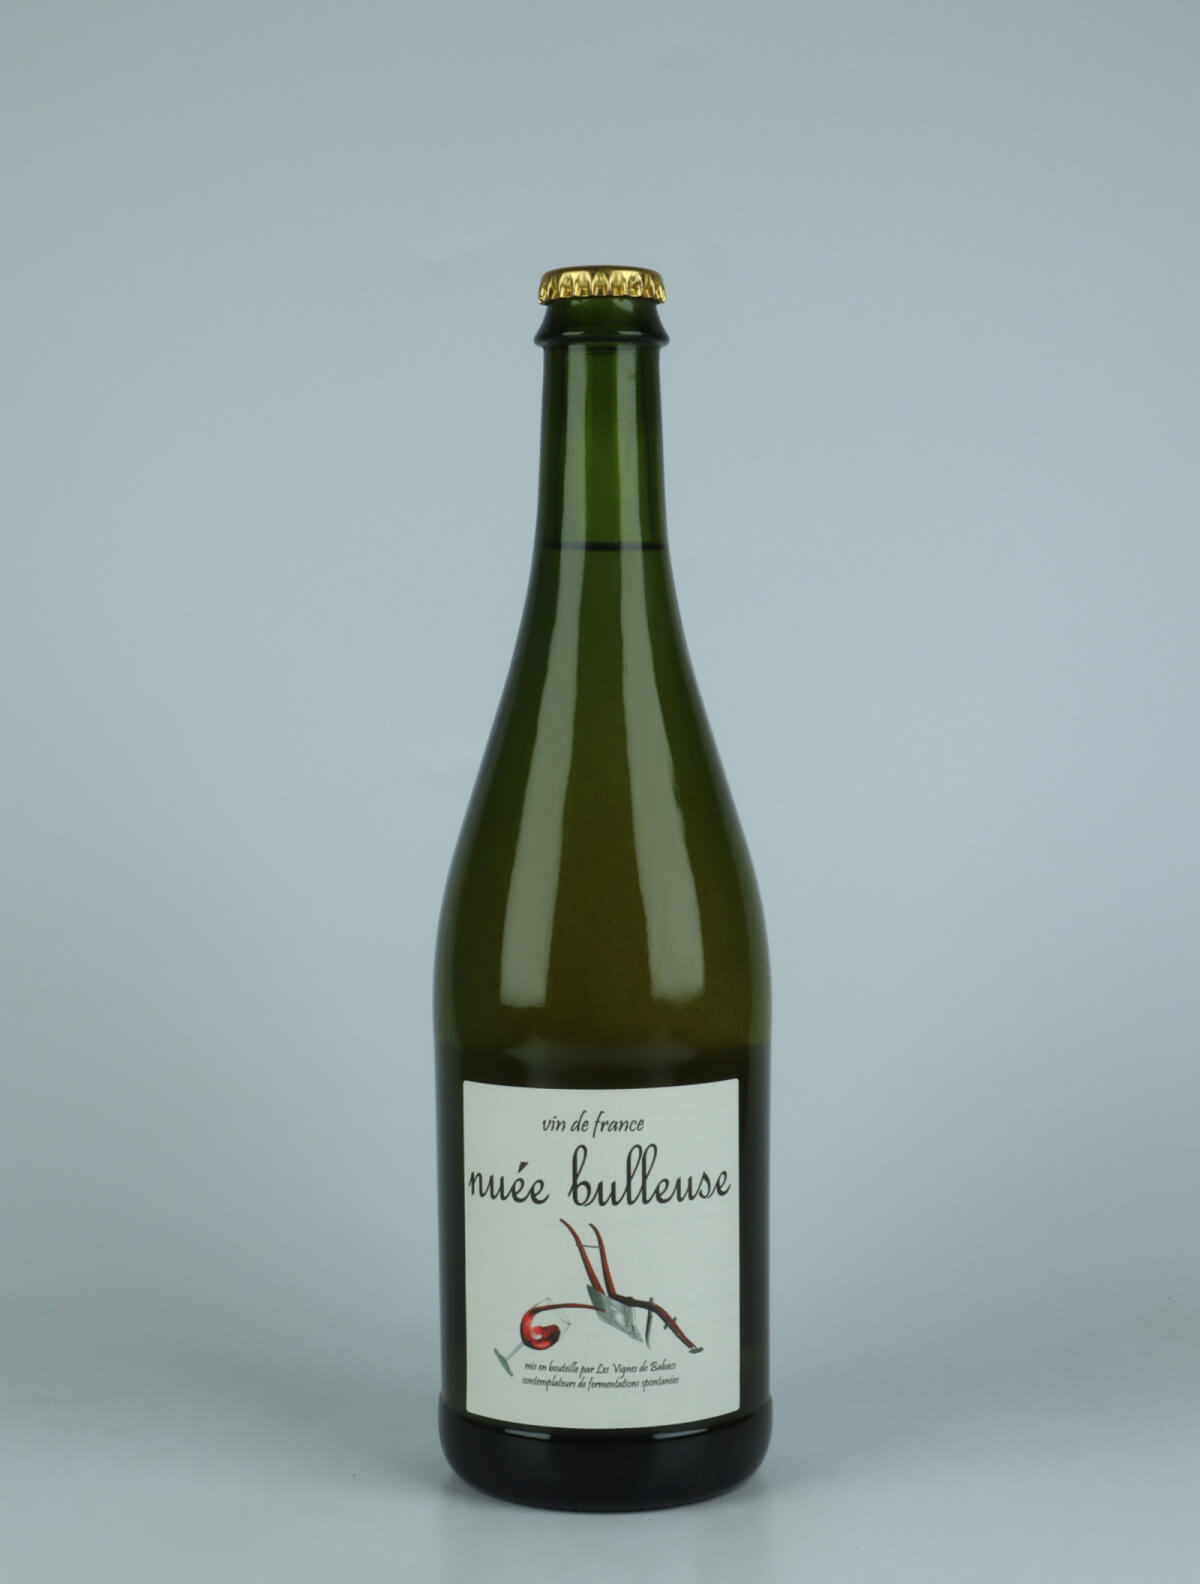 En flaske 2019 Nueé bulleuse Mousserende fra Les Vignes de Babass, Loire i Frankrig